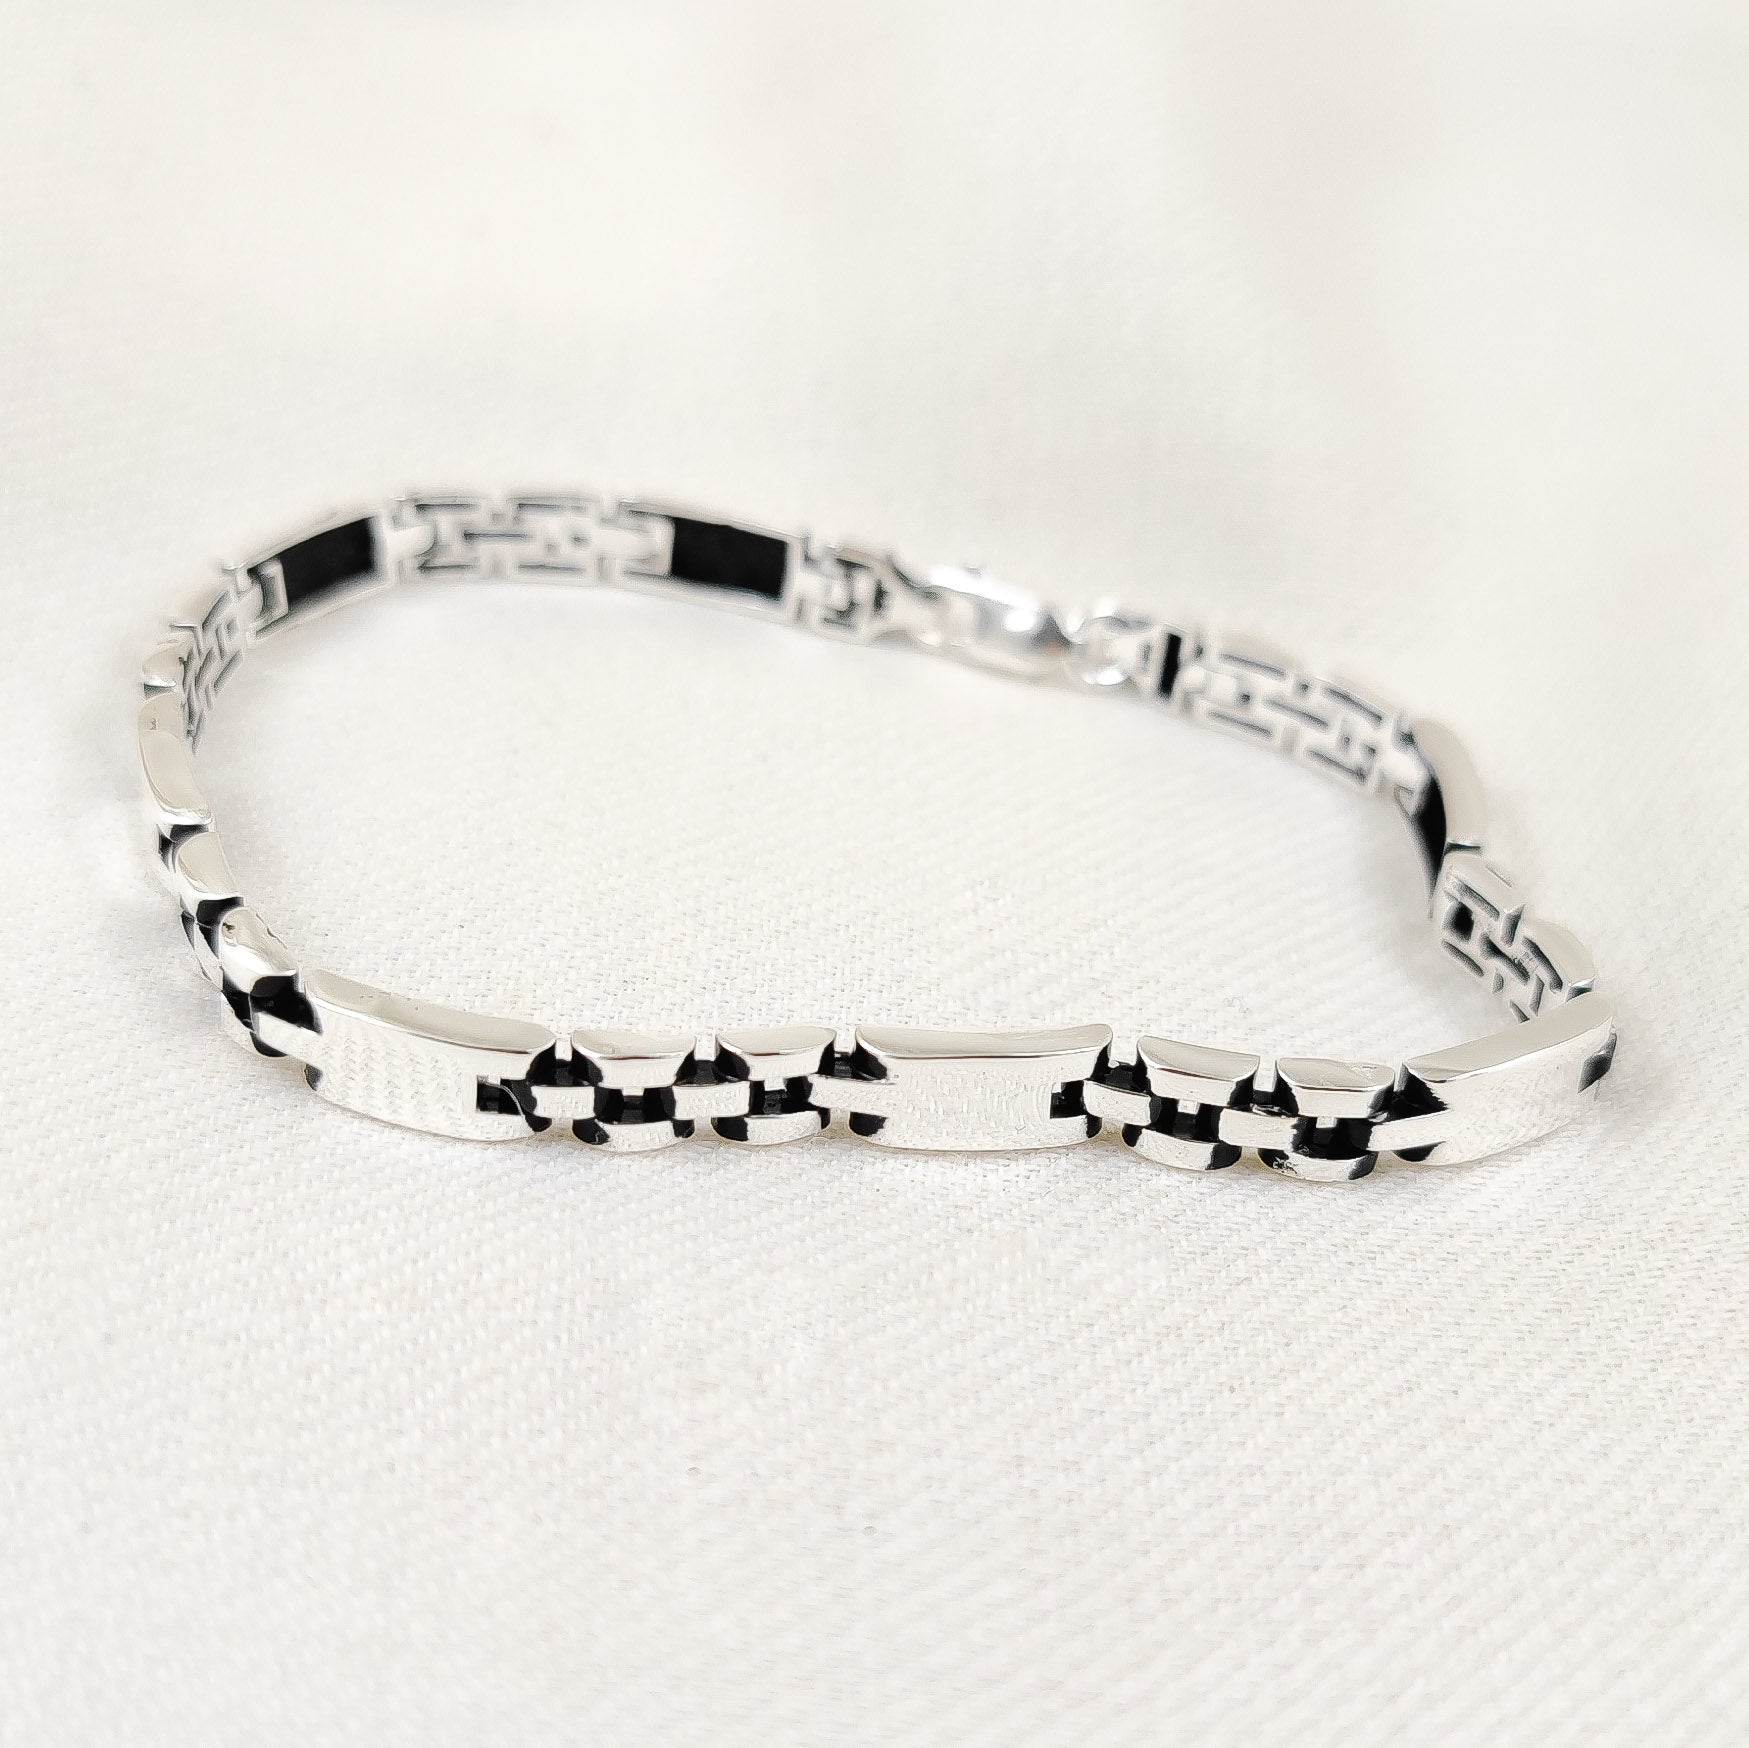 Silver Jewelry Men's Bracelet by Jauhri 92.5 Silver - Interval Bracelet